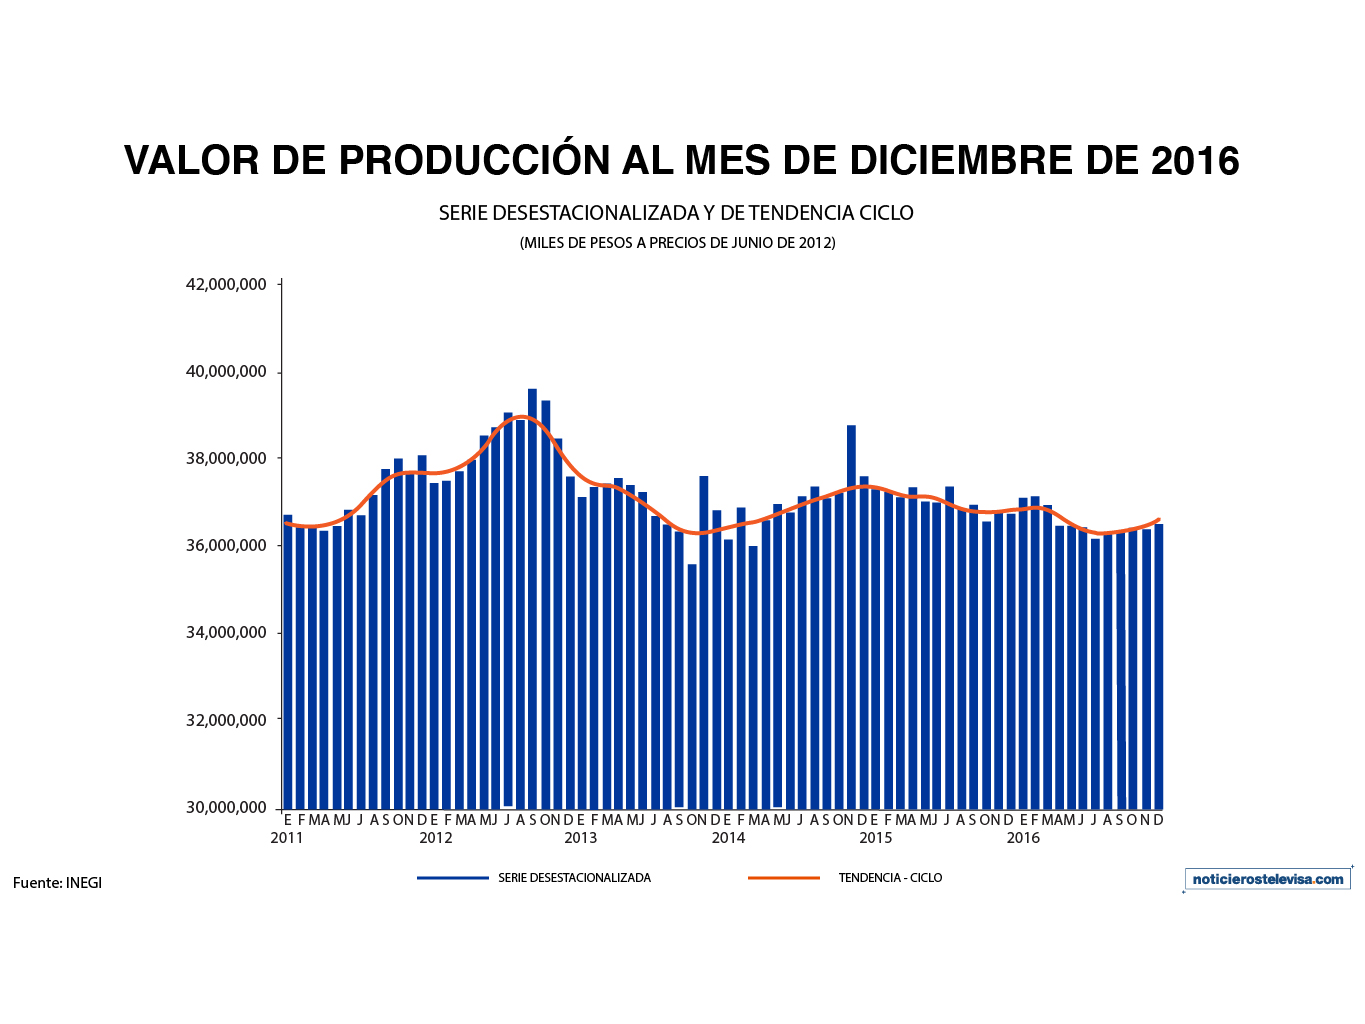 En diciembre, el valor de la producción de empresas constructoras registró un aumento de 0.4% a tasa mensual